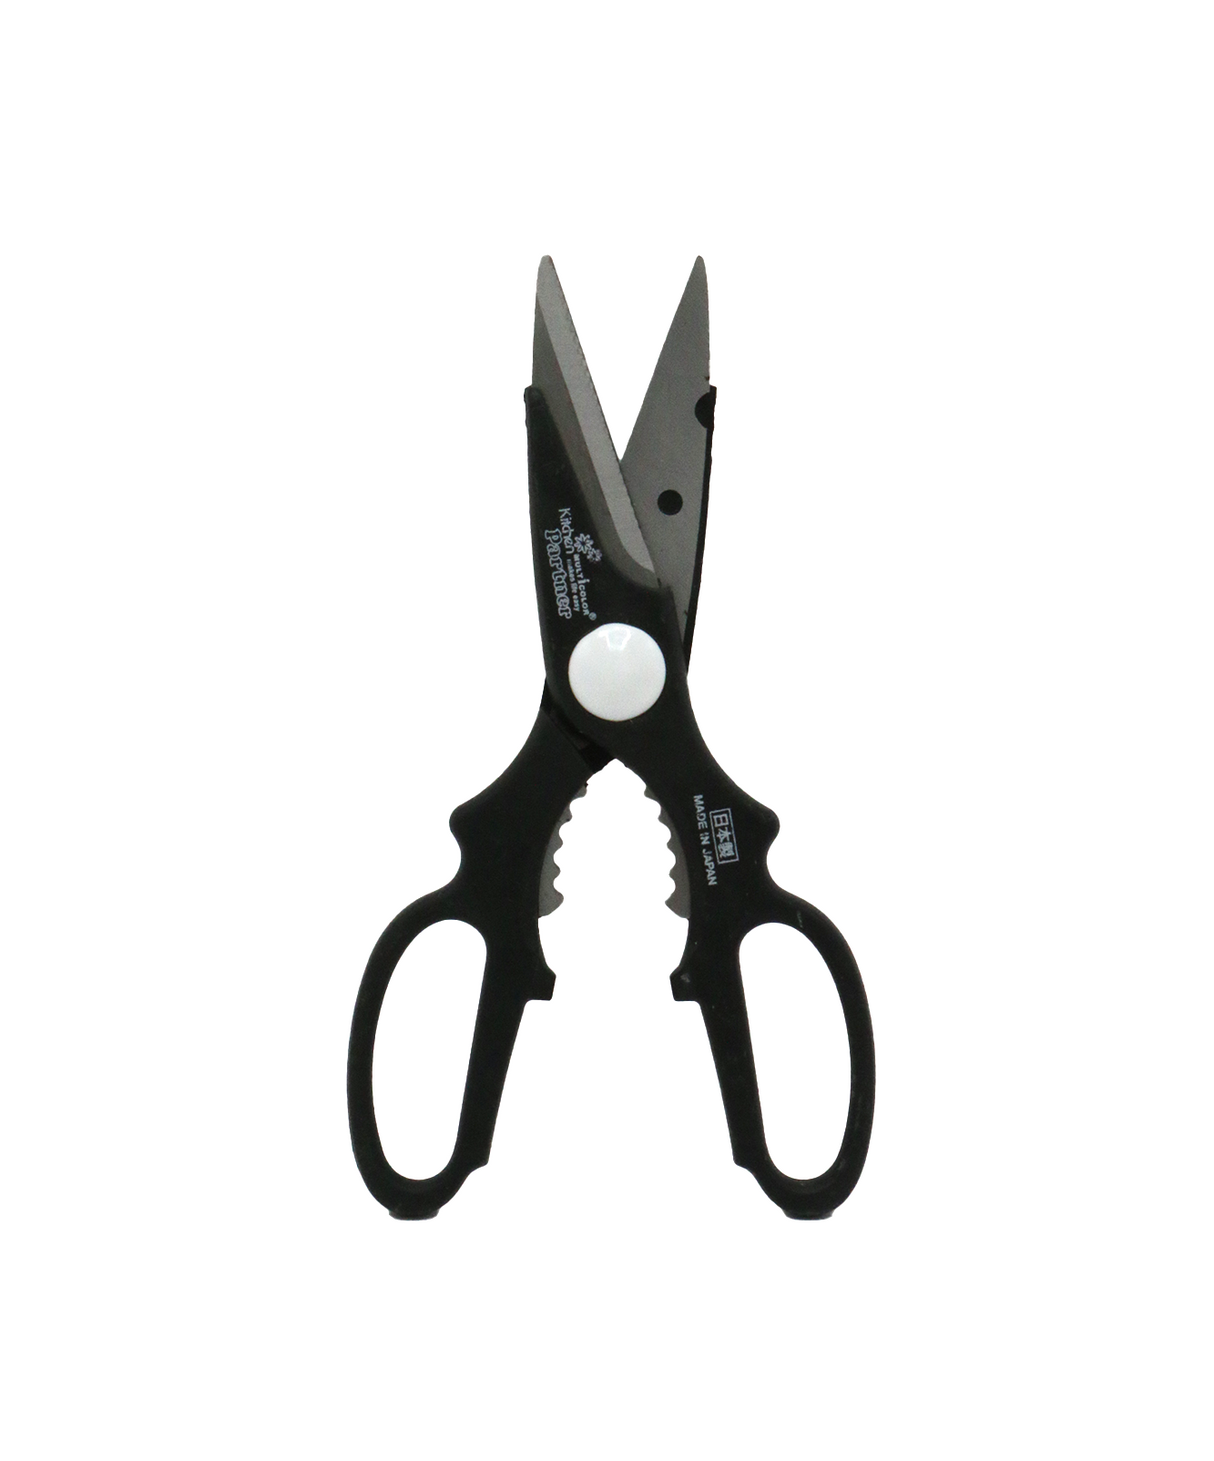 kitchen scissors china 9160